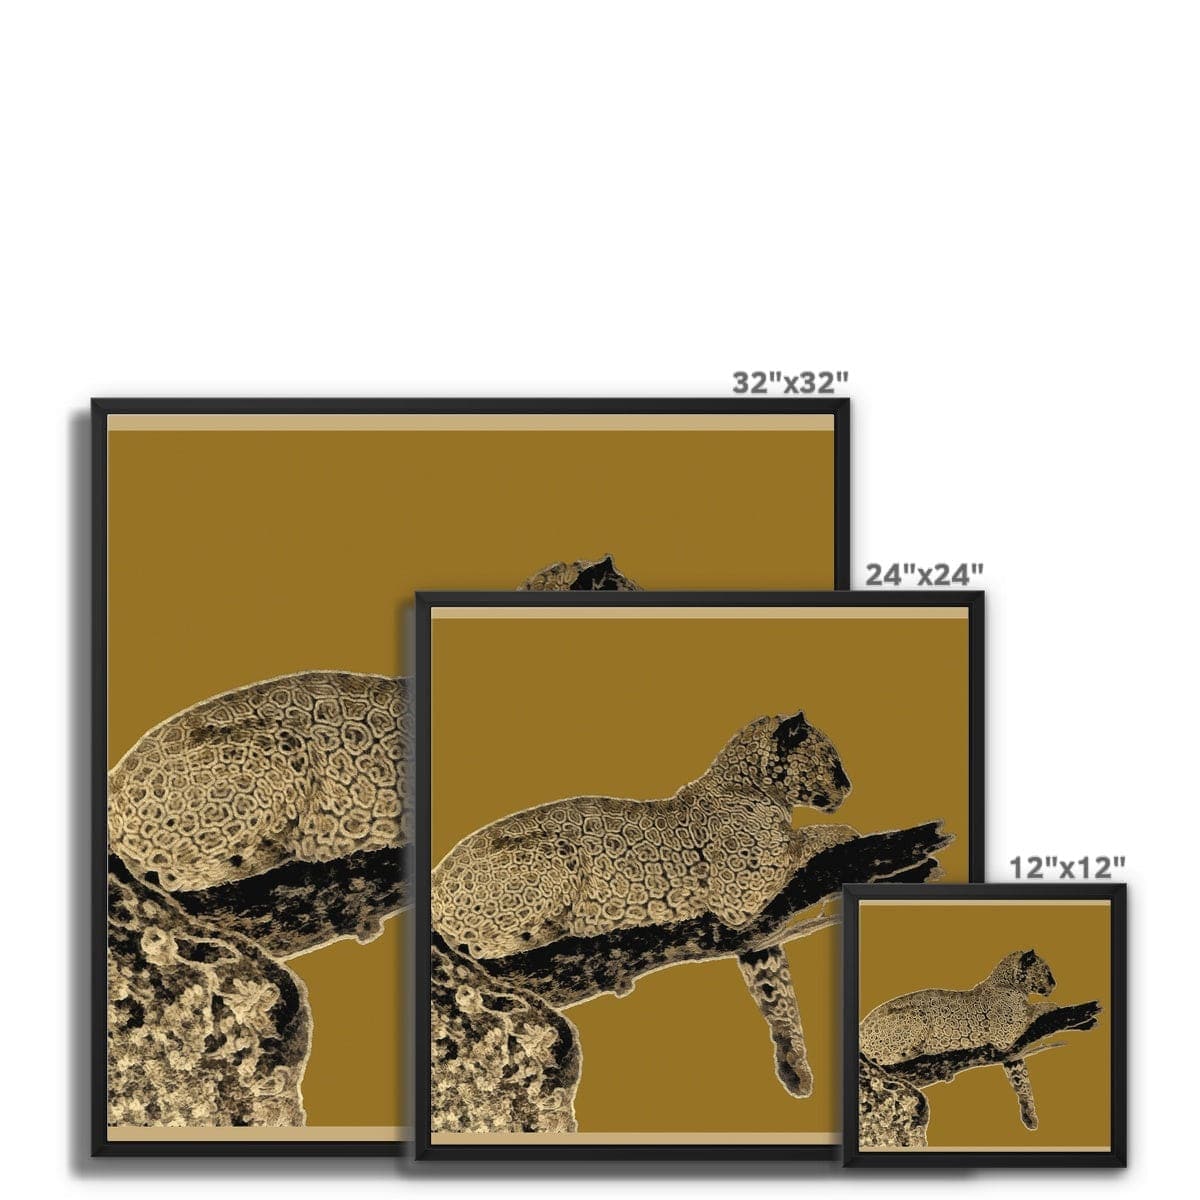 Leopard Gold on Black Framed Canvas